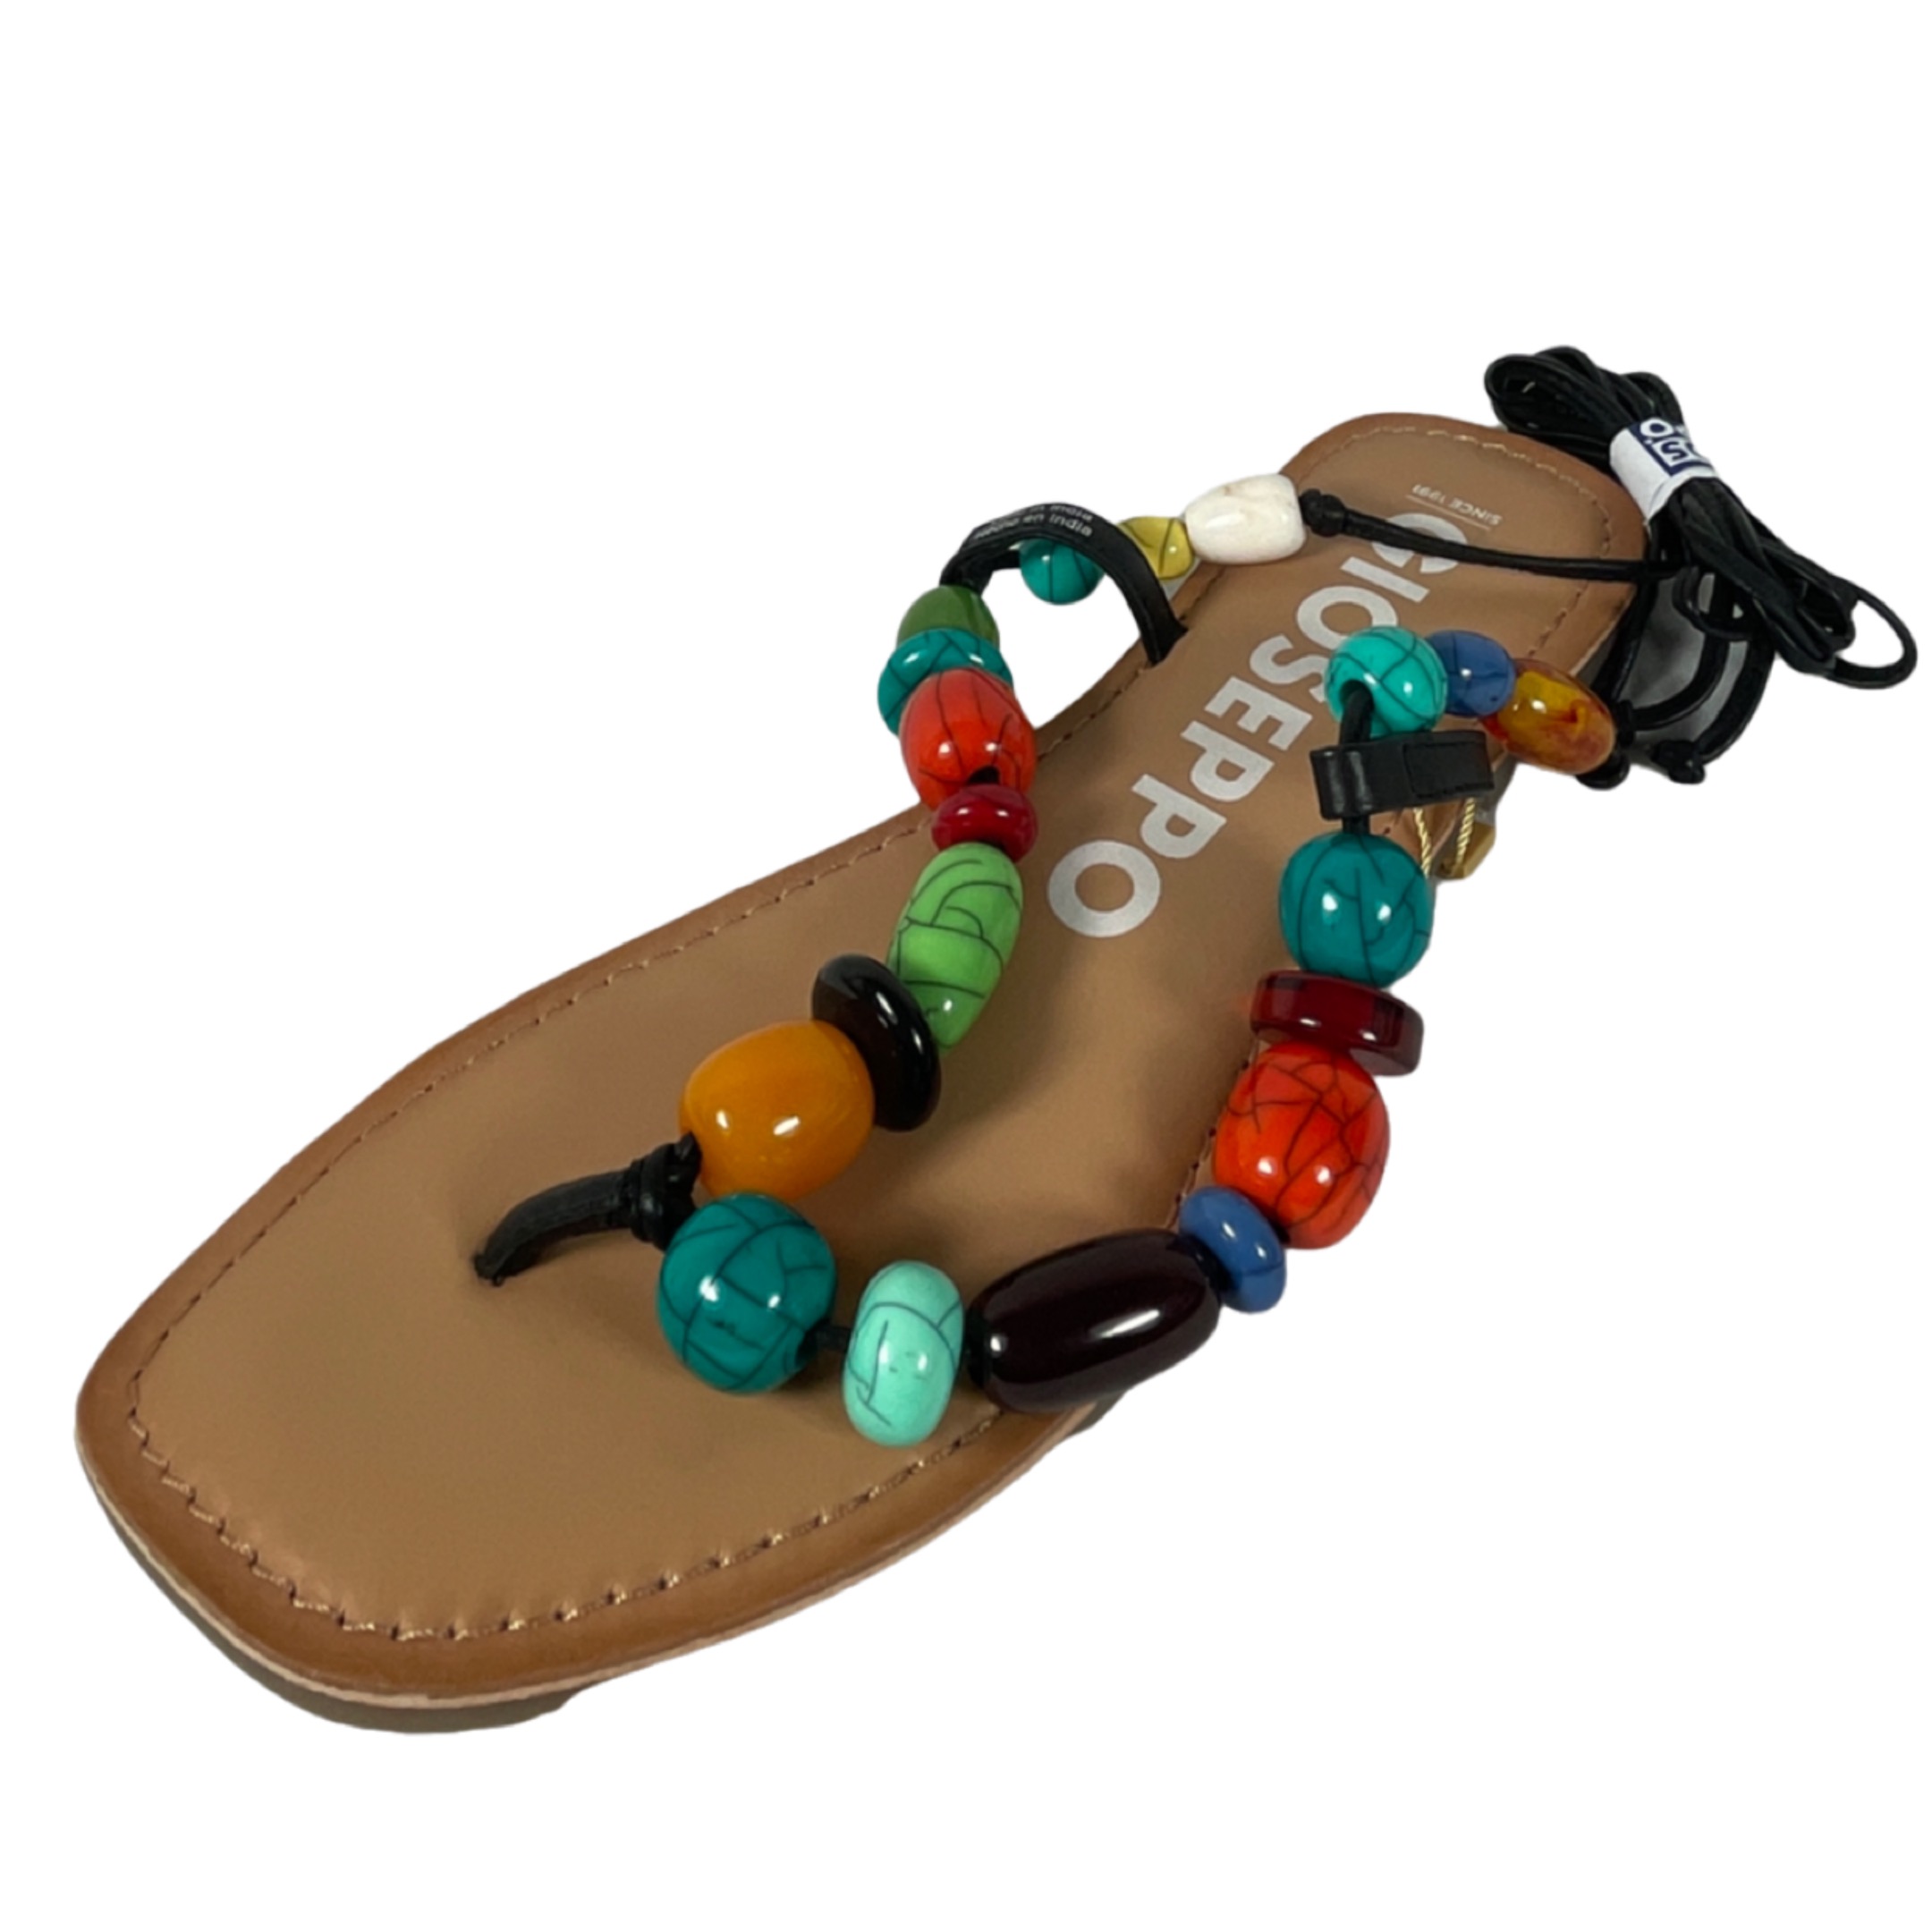 GIOSEPPO 69160 CHALLEX Damen Sandalette Zehentrenner Fesselriemen zum Binden multicolor